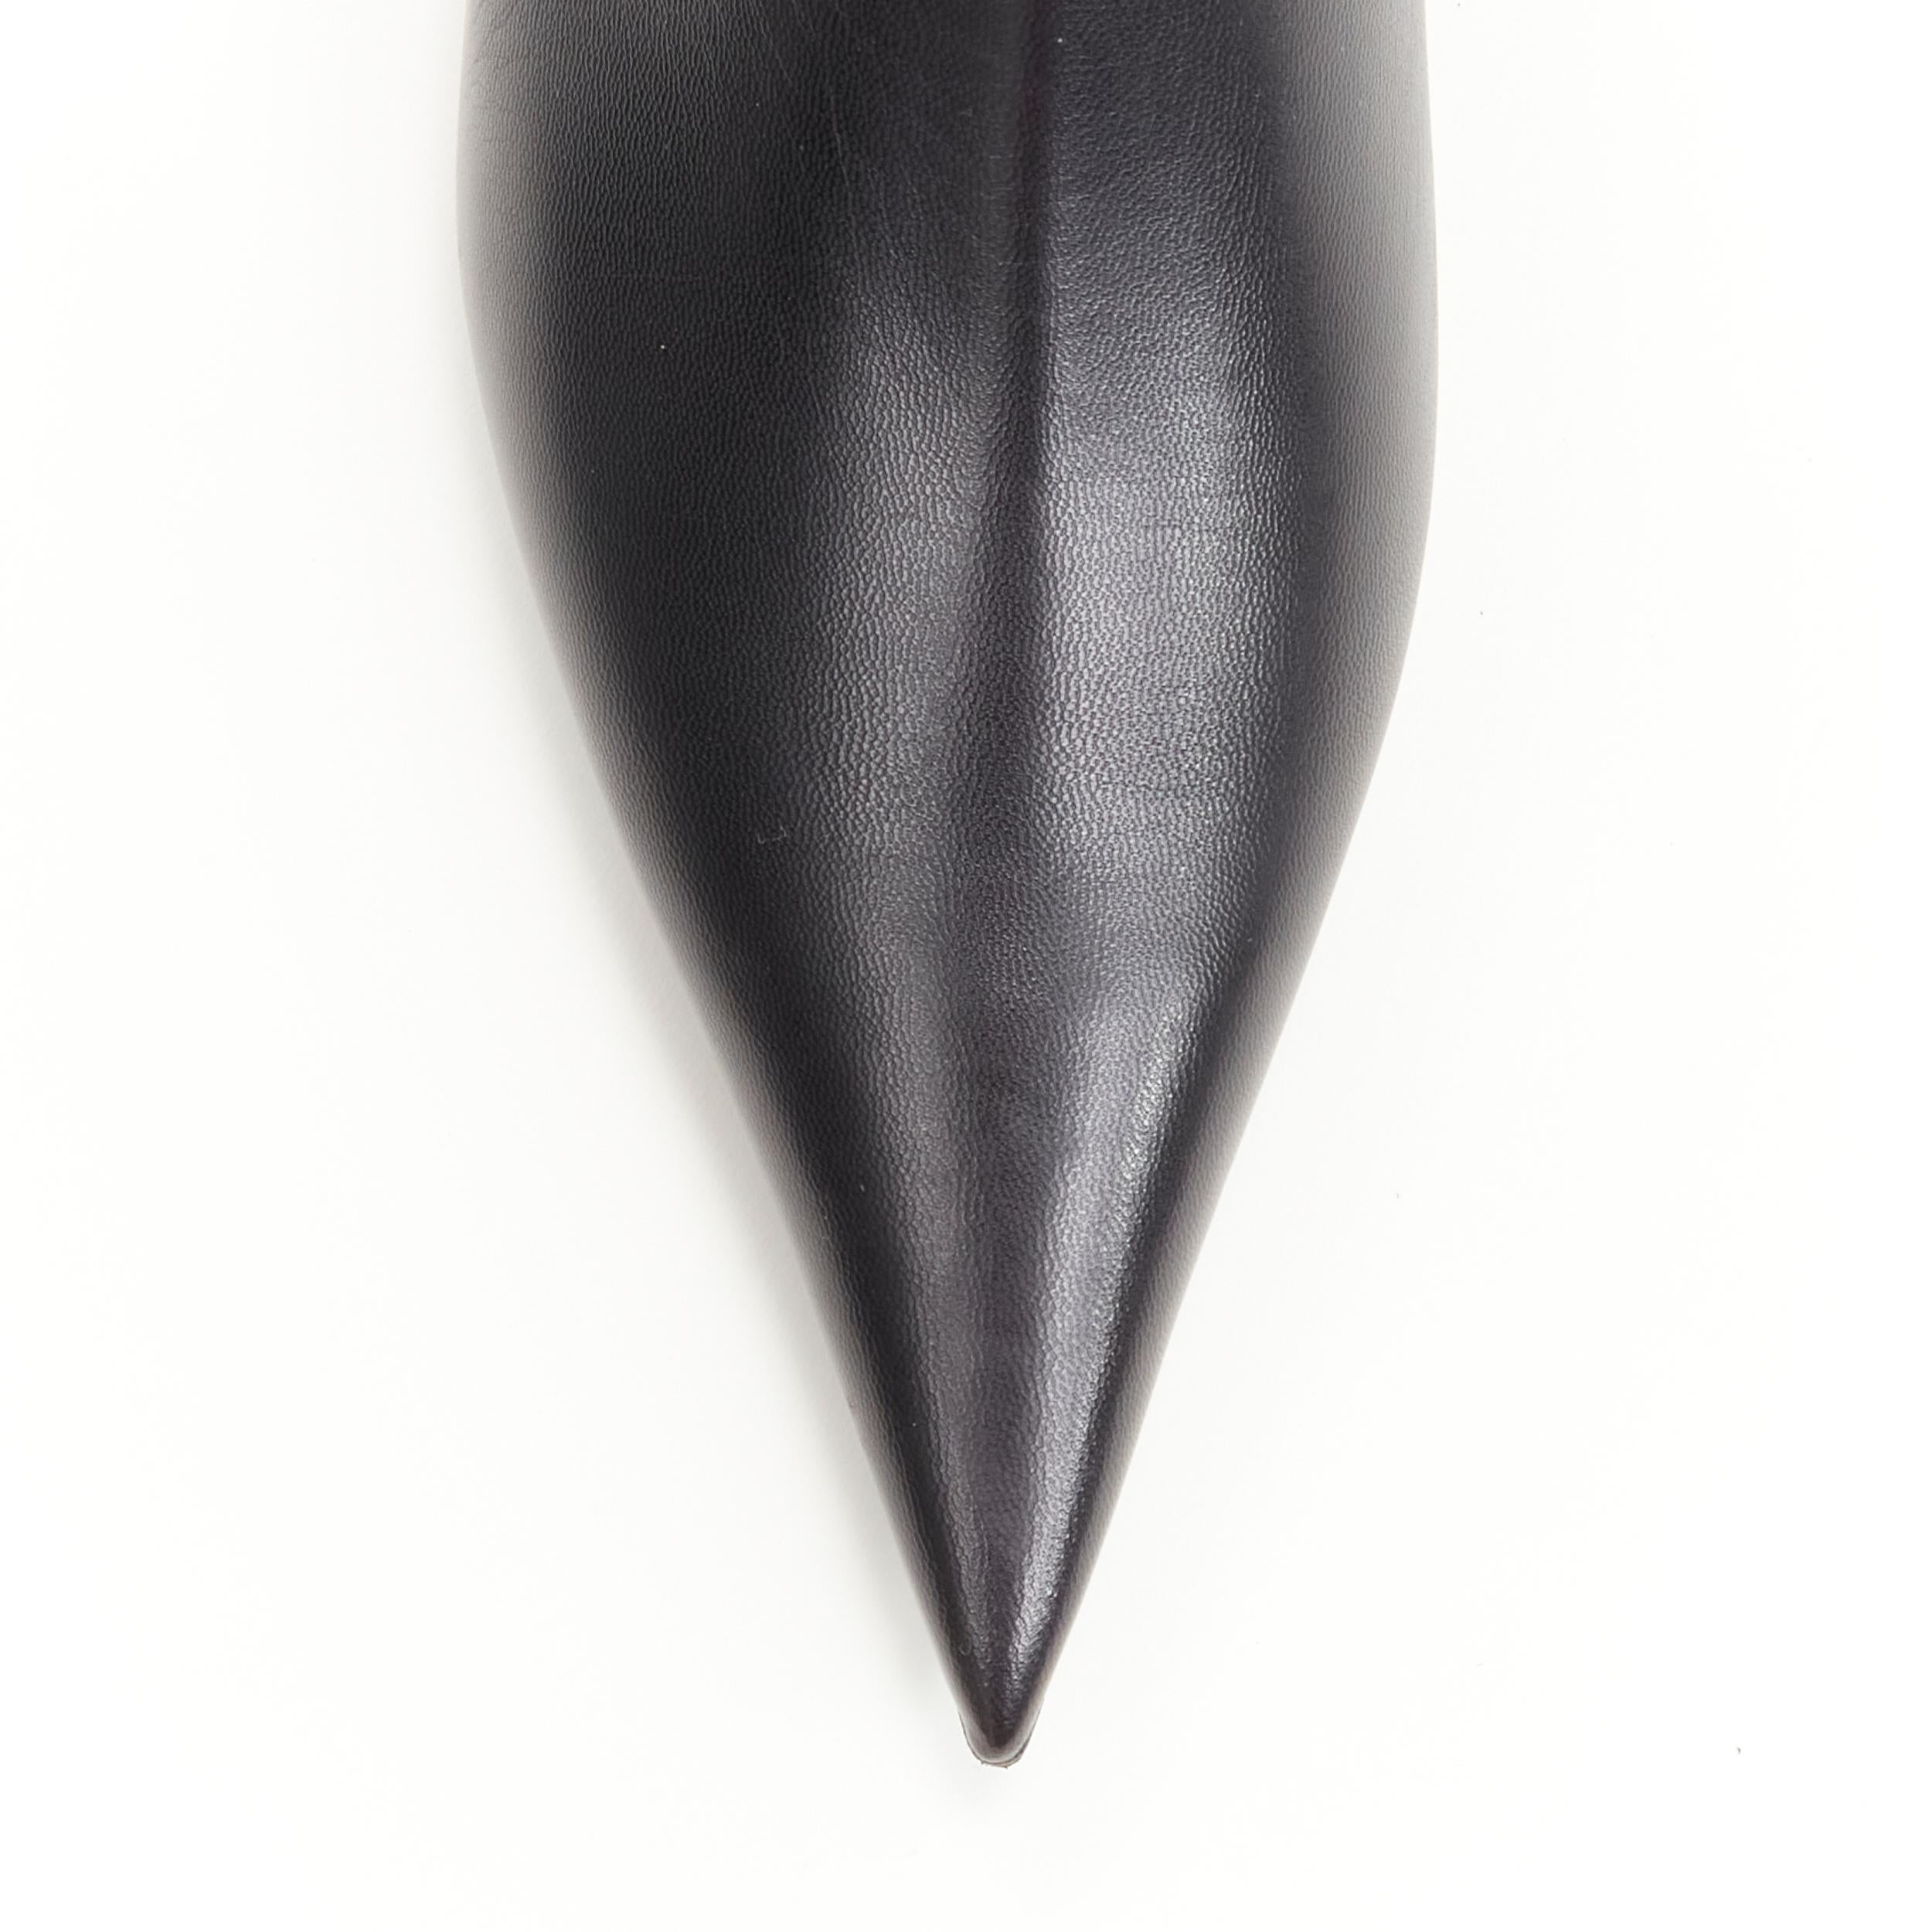 Women's new BALENCIAGA Knife black calfskin leather kitten heel bootie EU37.5 US7.5